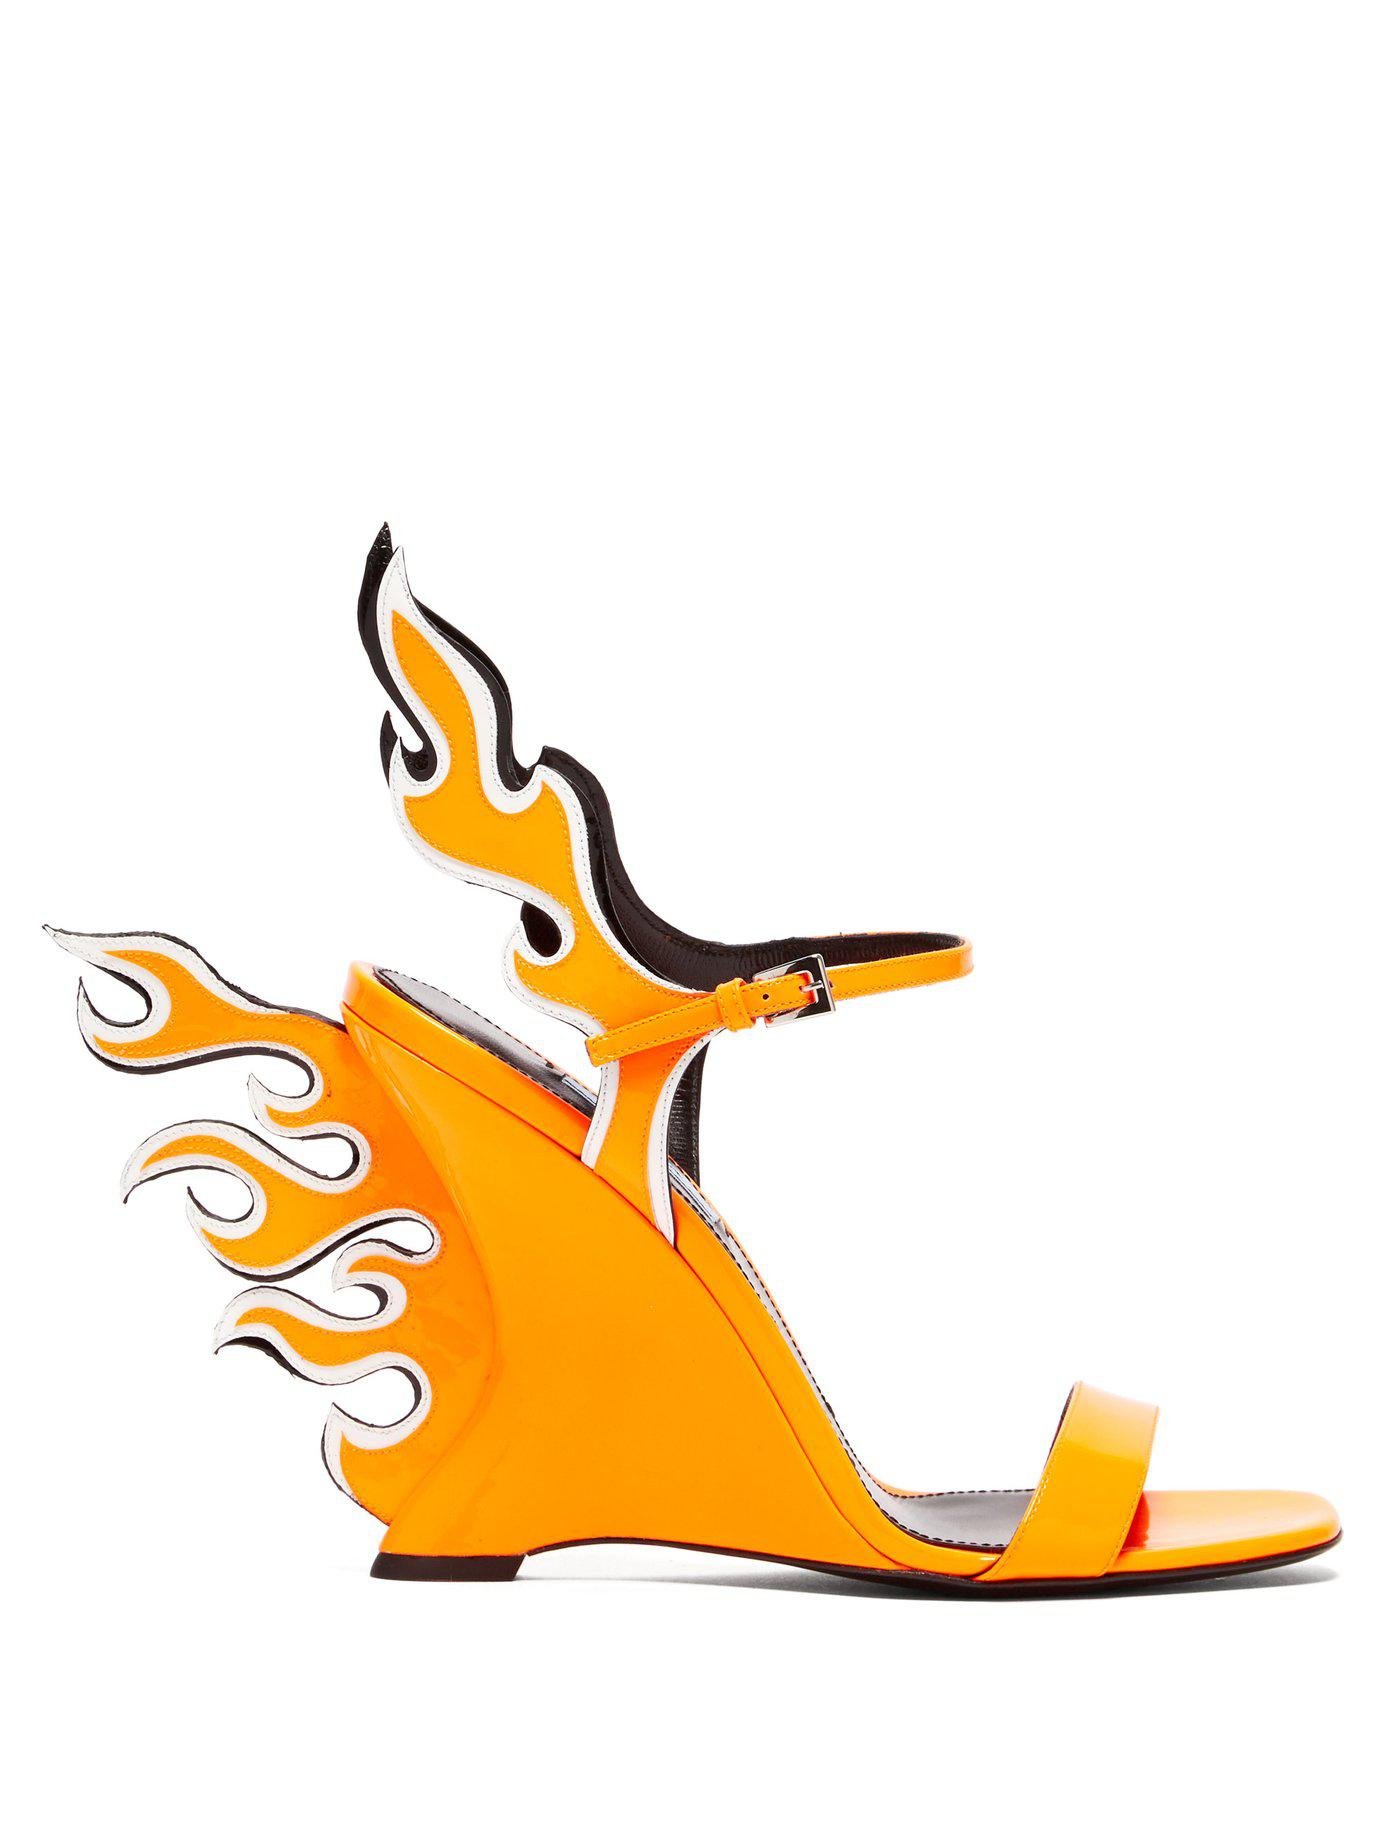 fire prada shoes